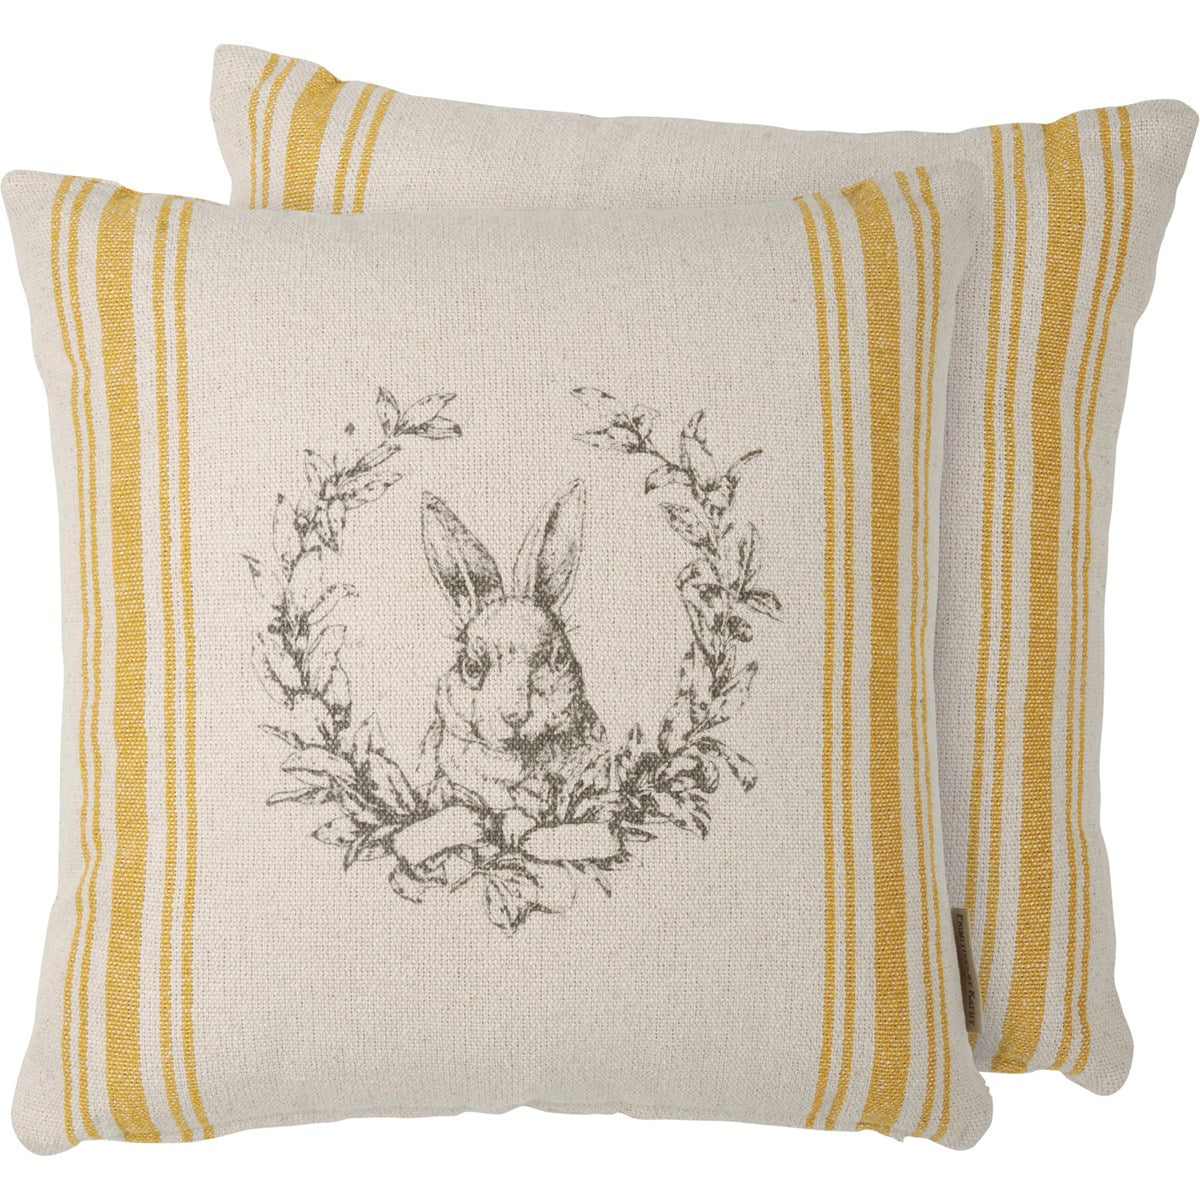 Rabbit Crest Illustration 15" Accent Pillow